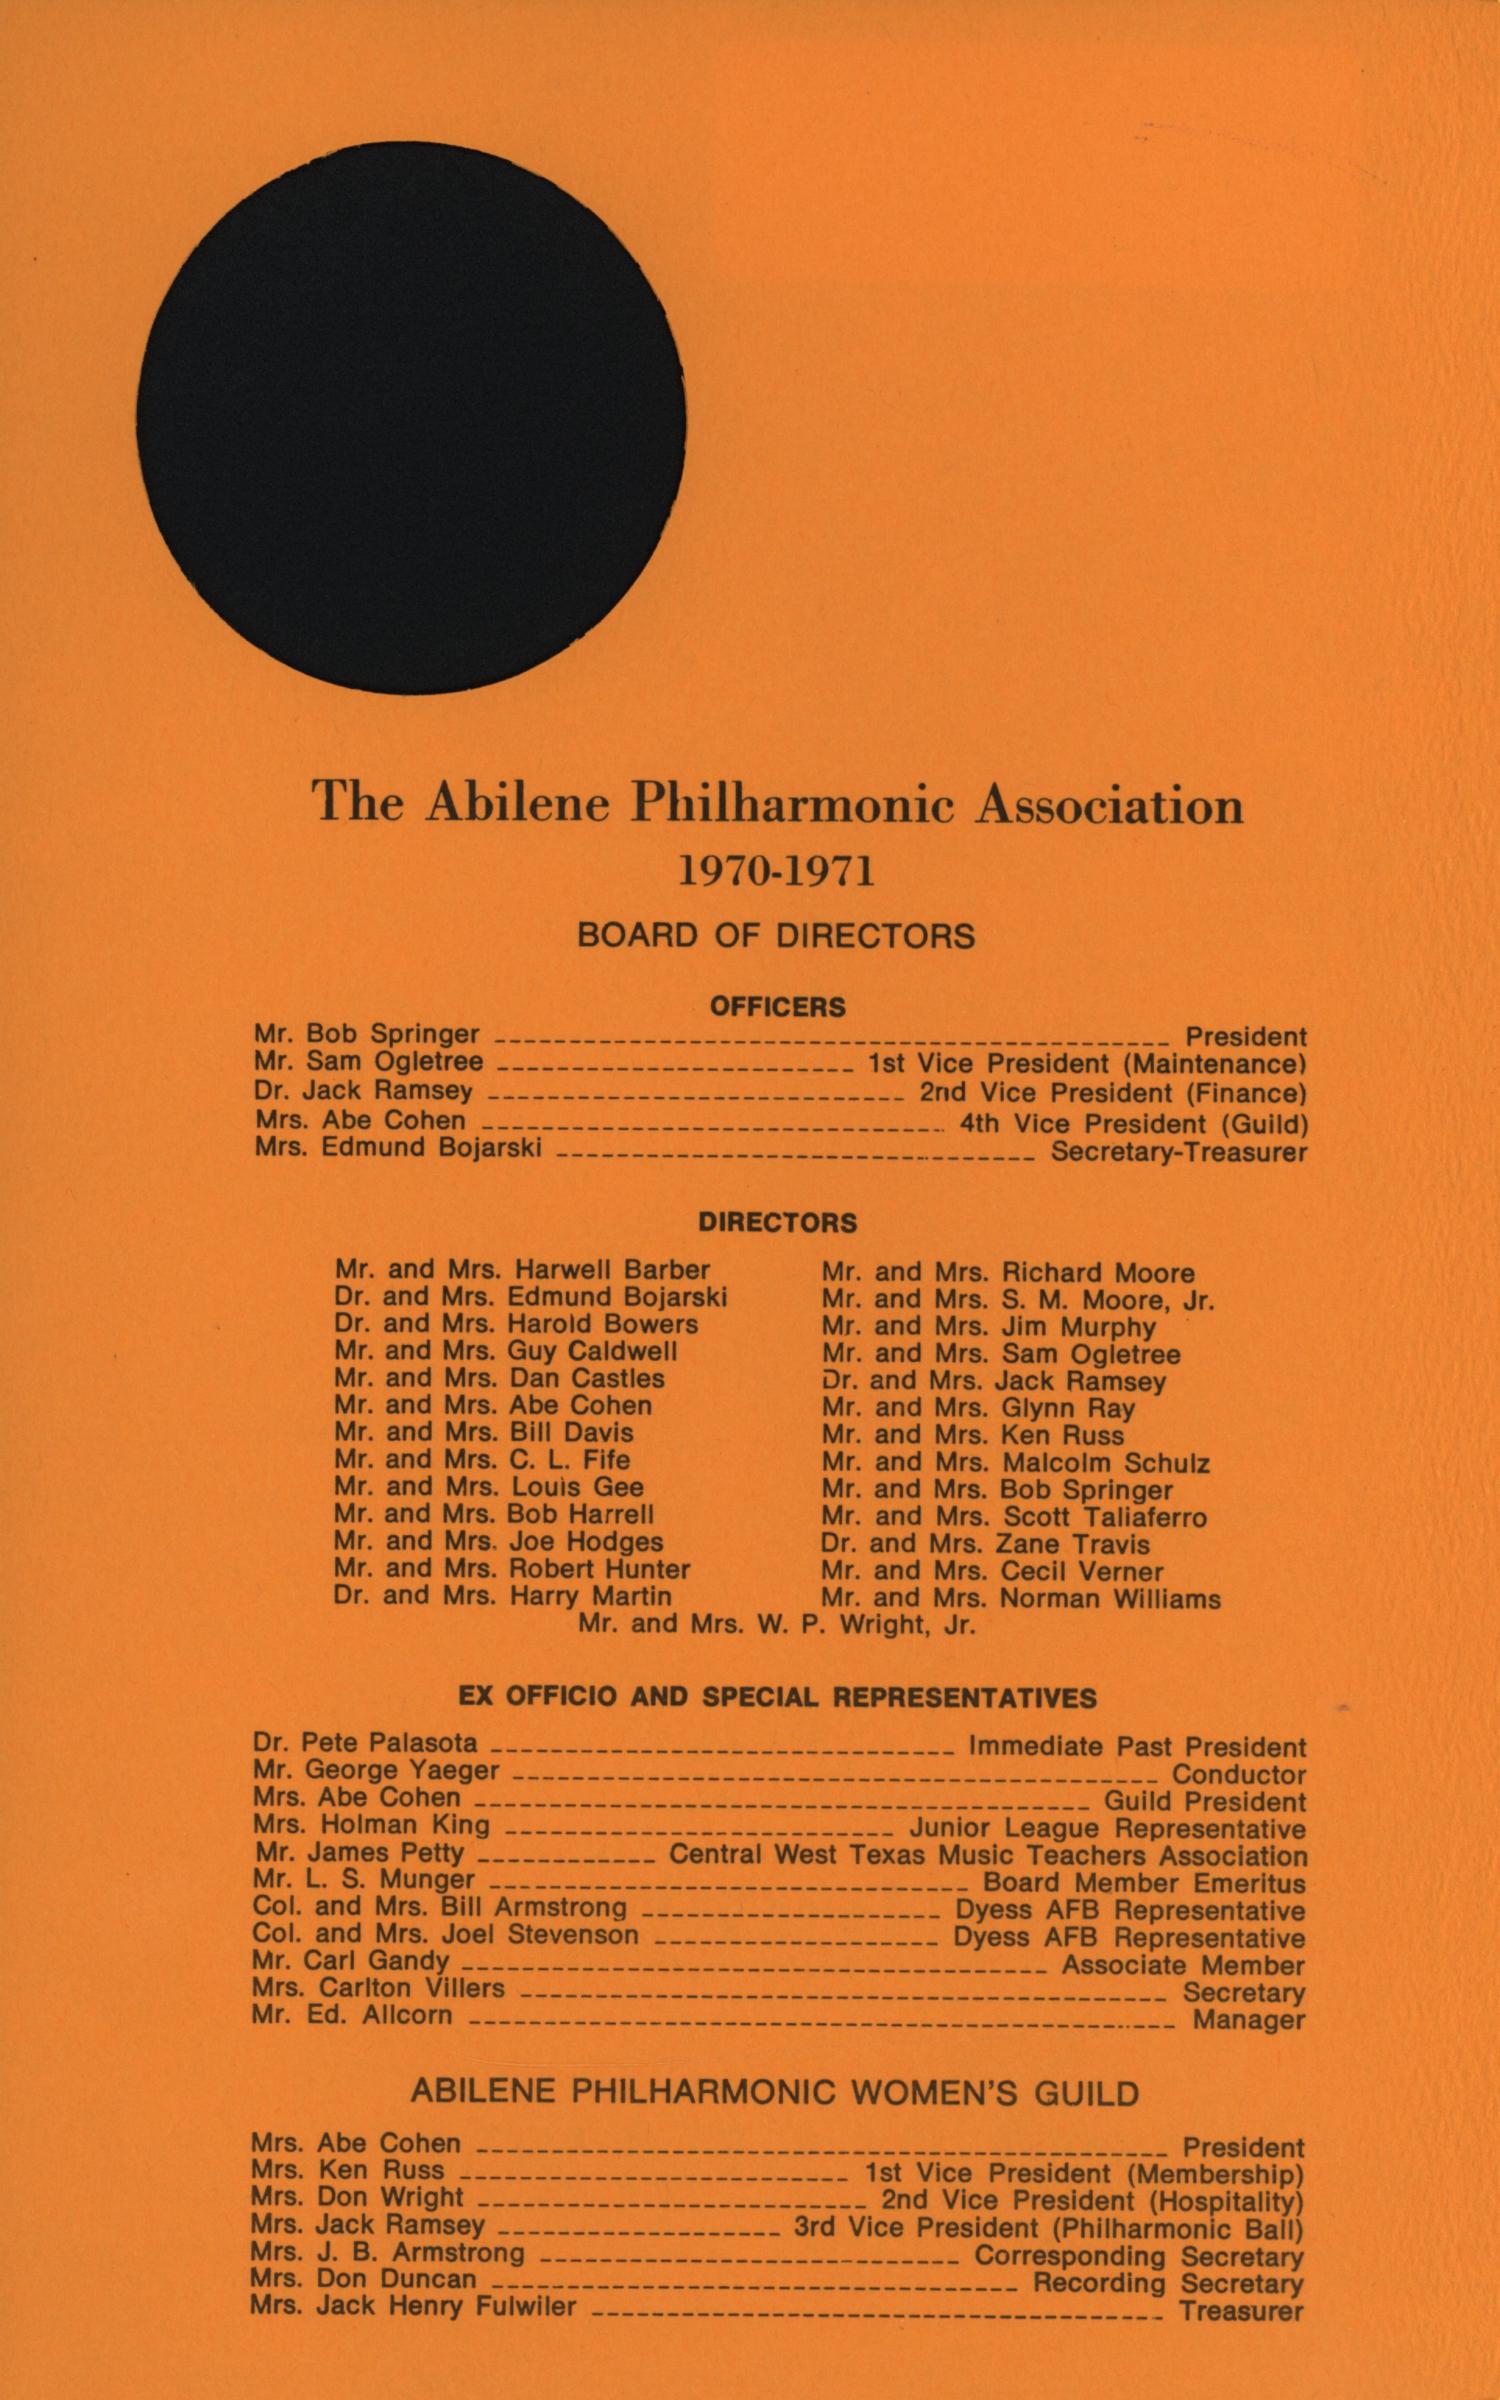 Abilene Philharmonic Playbill: March 30, 1971
                                                
                                                    2
                                                